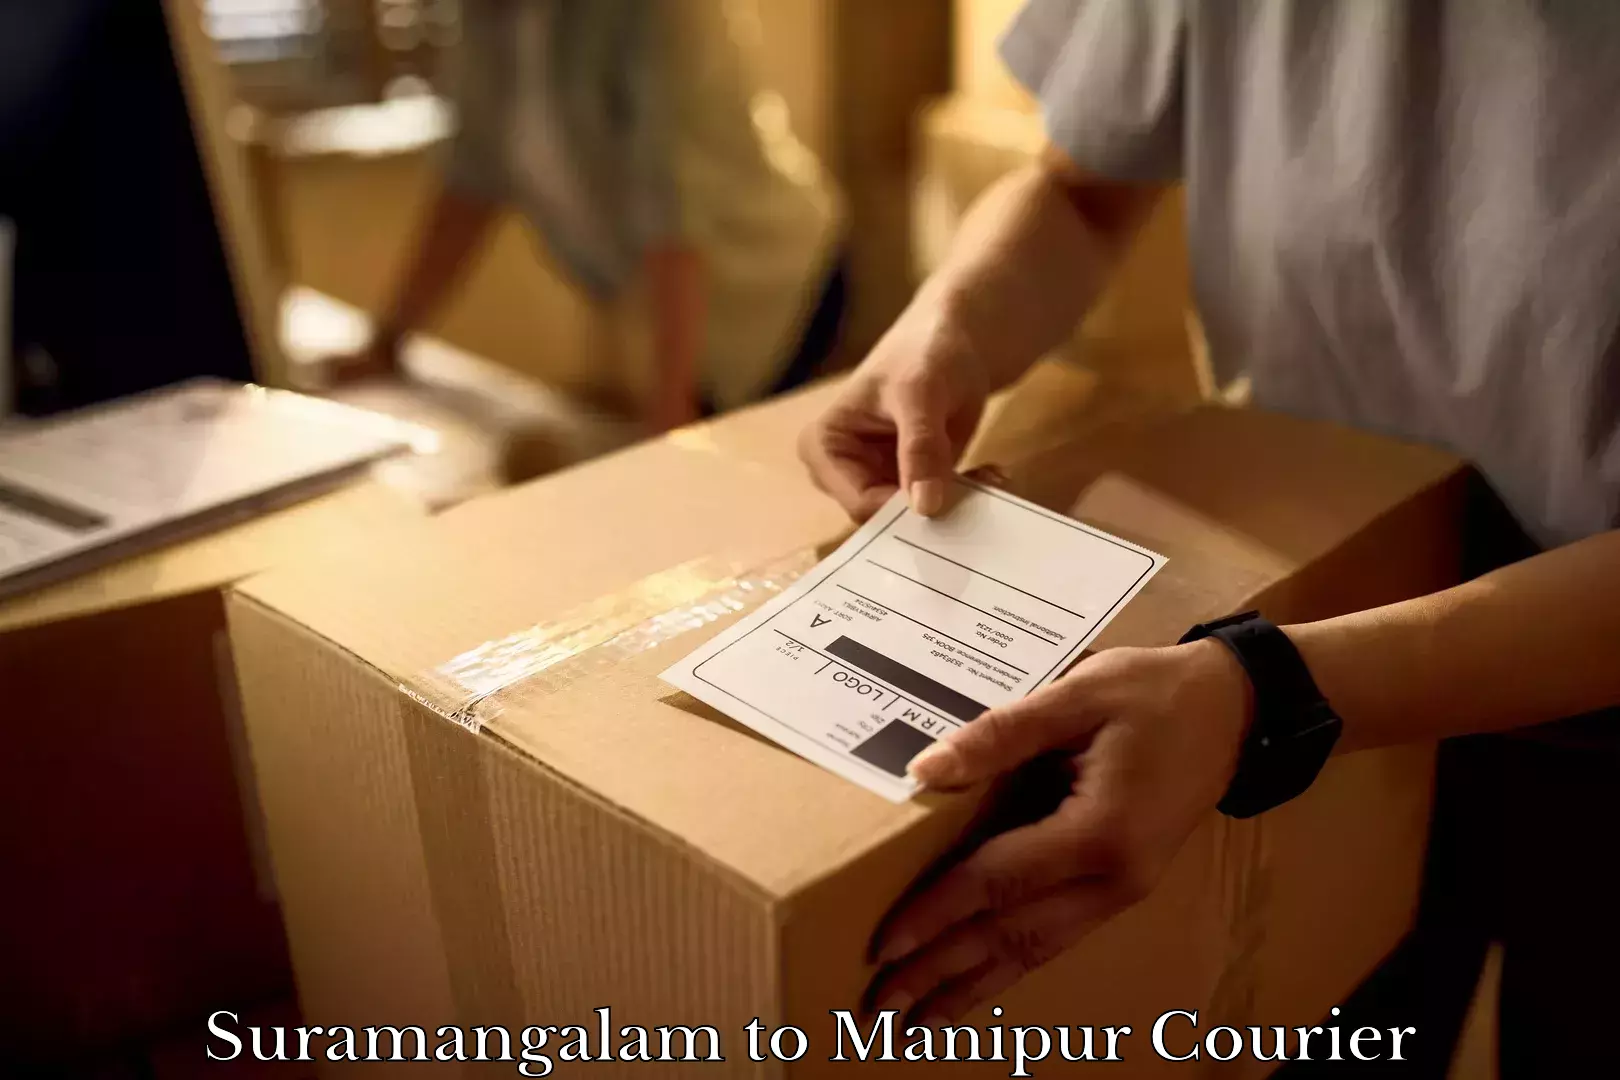 Furniture transport service Suramangalam to Manipur